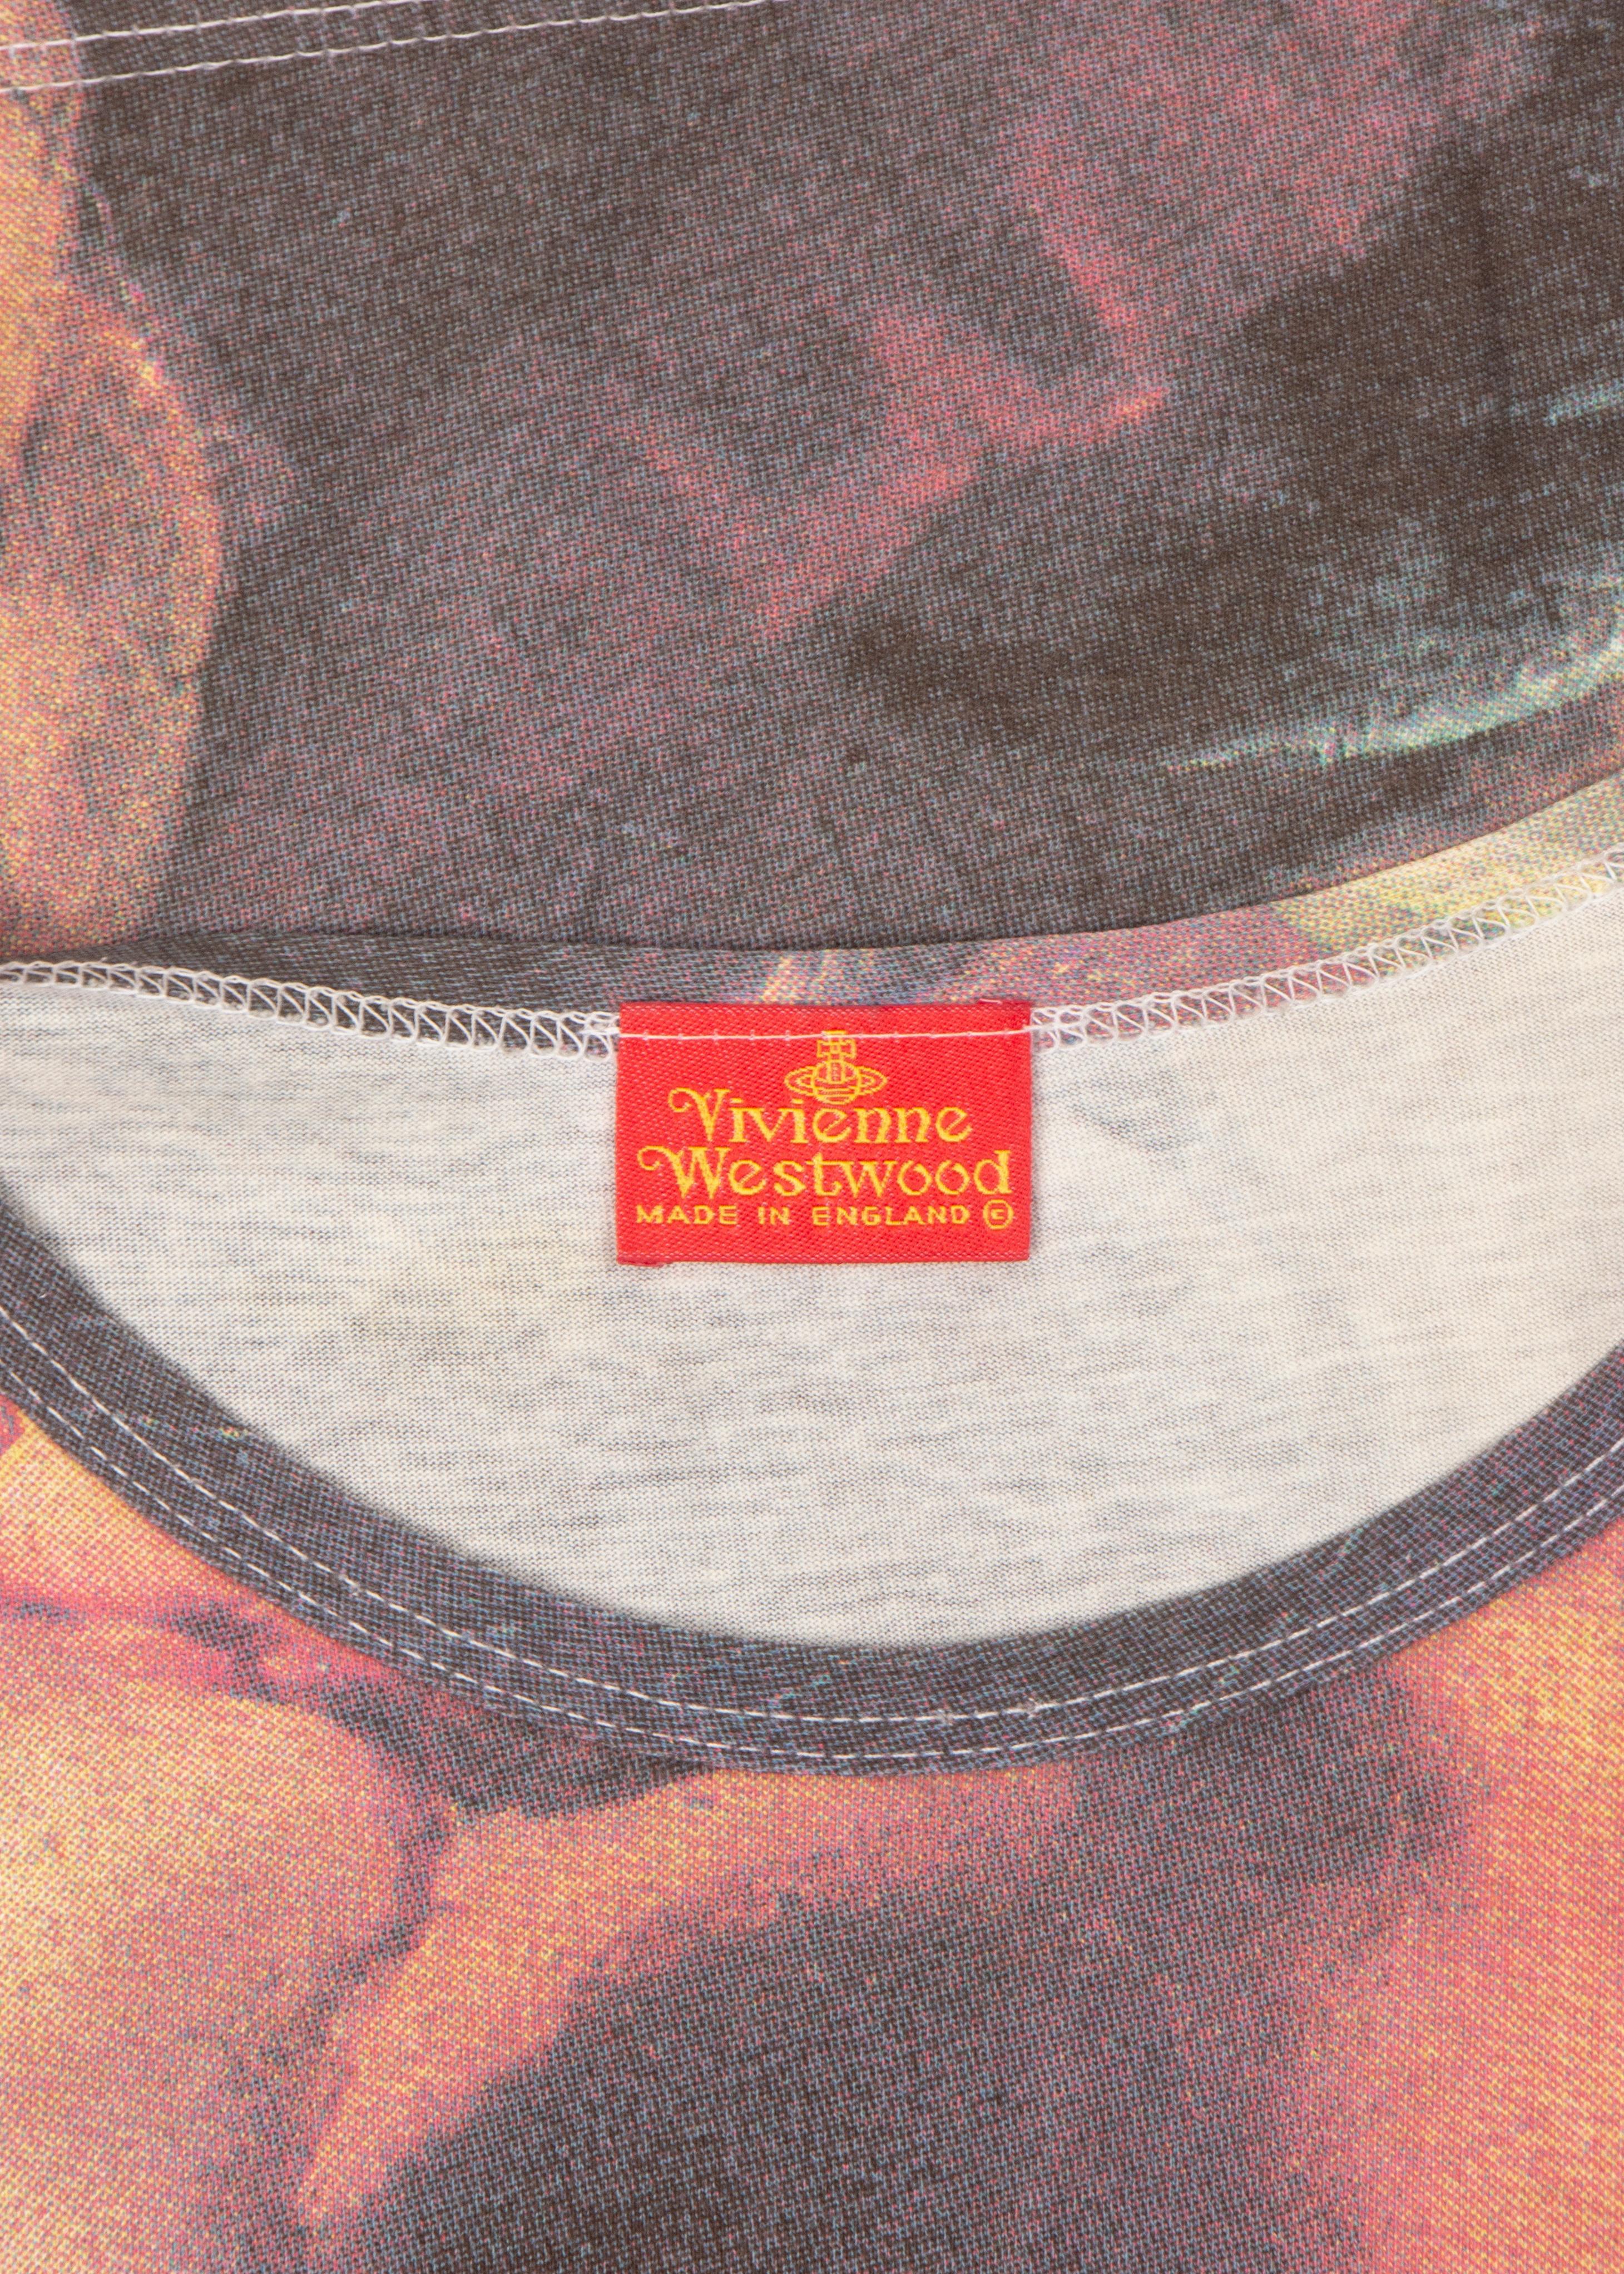 Vivienne Westwood « Grand Hotel » Francois Boucher t-shirt Hercules, ss 1993 en vente 1